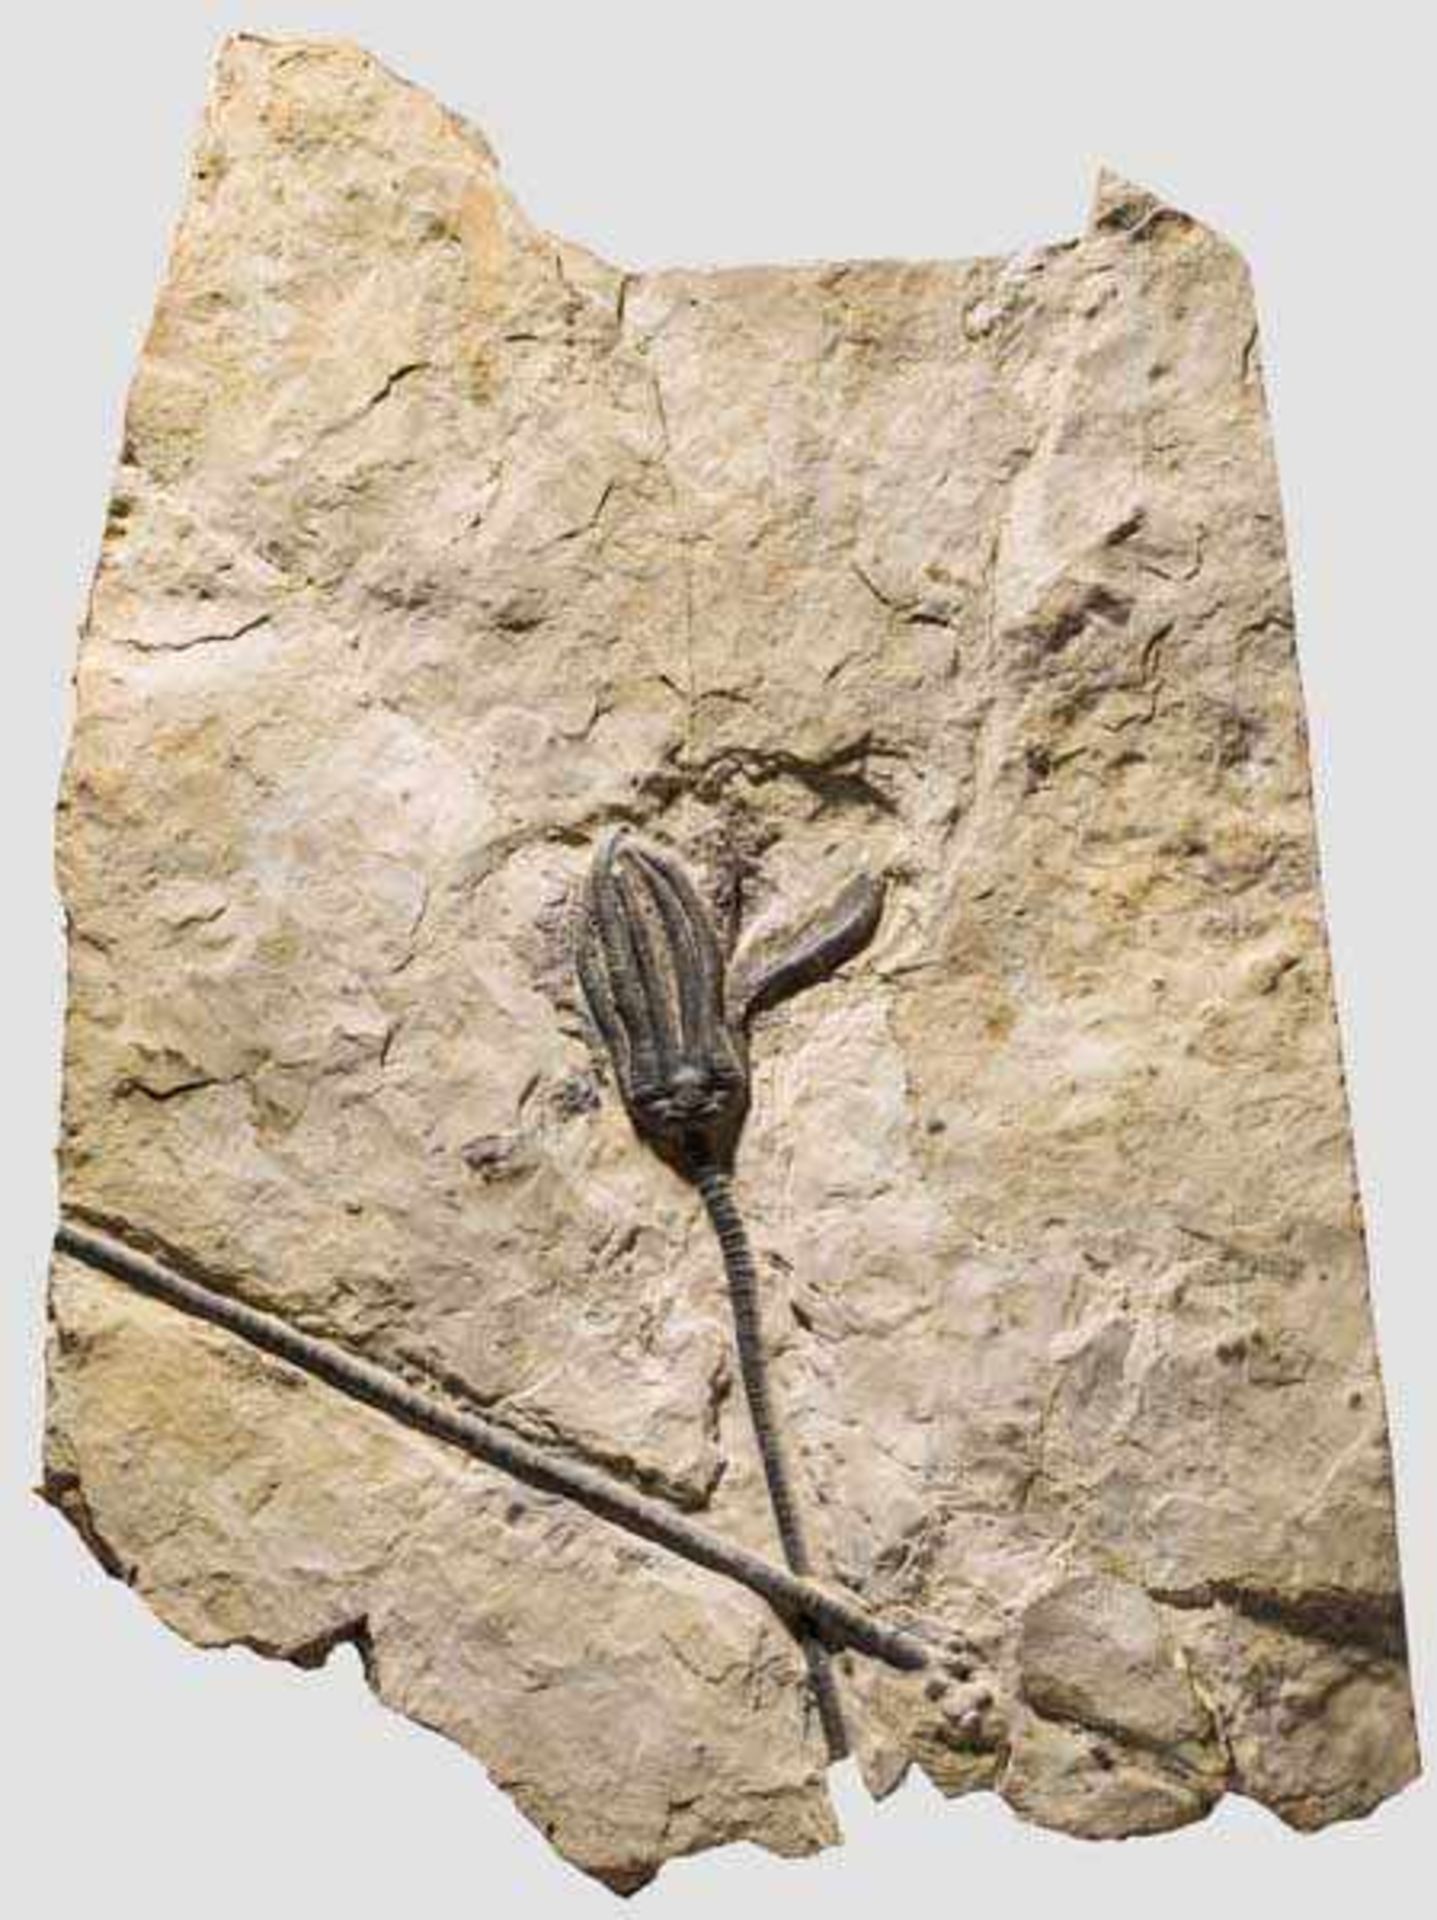 Fossilisierte Seelilie, ca. 80 Millionen Jahre alt Versteinerung einer Seelilie (Crinoidea) aus